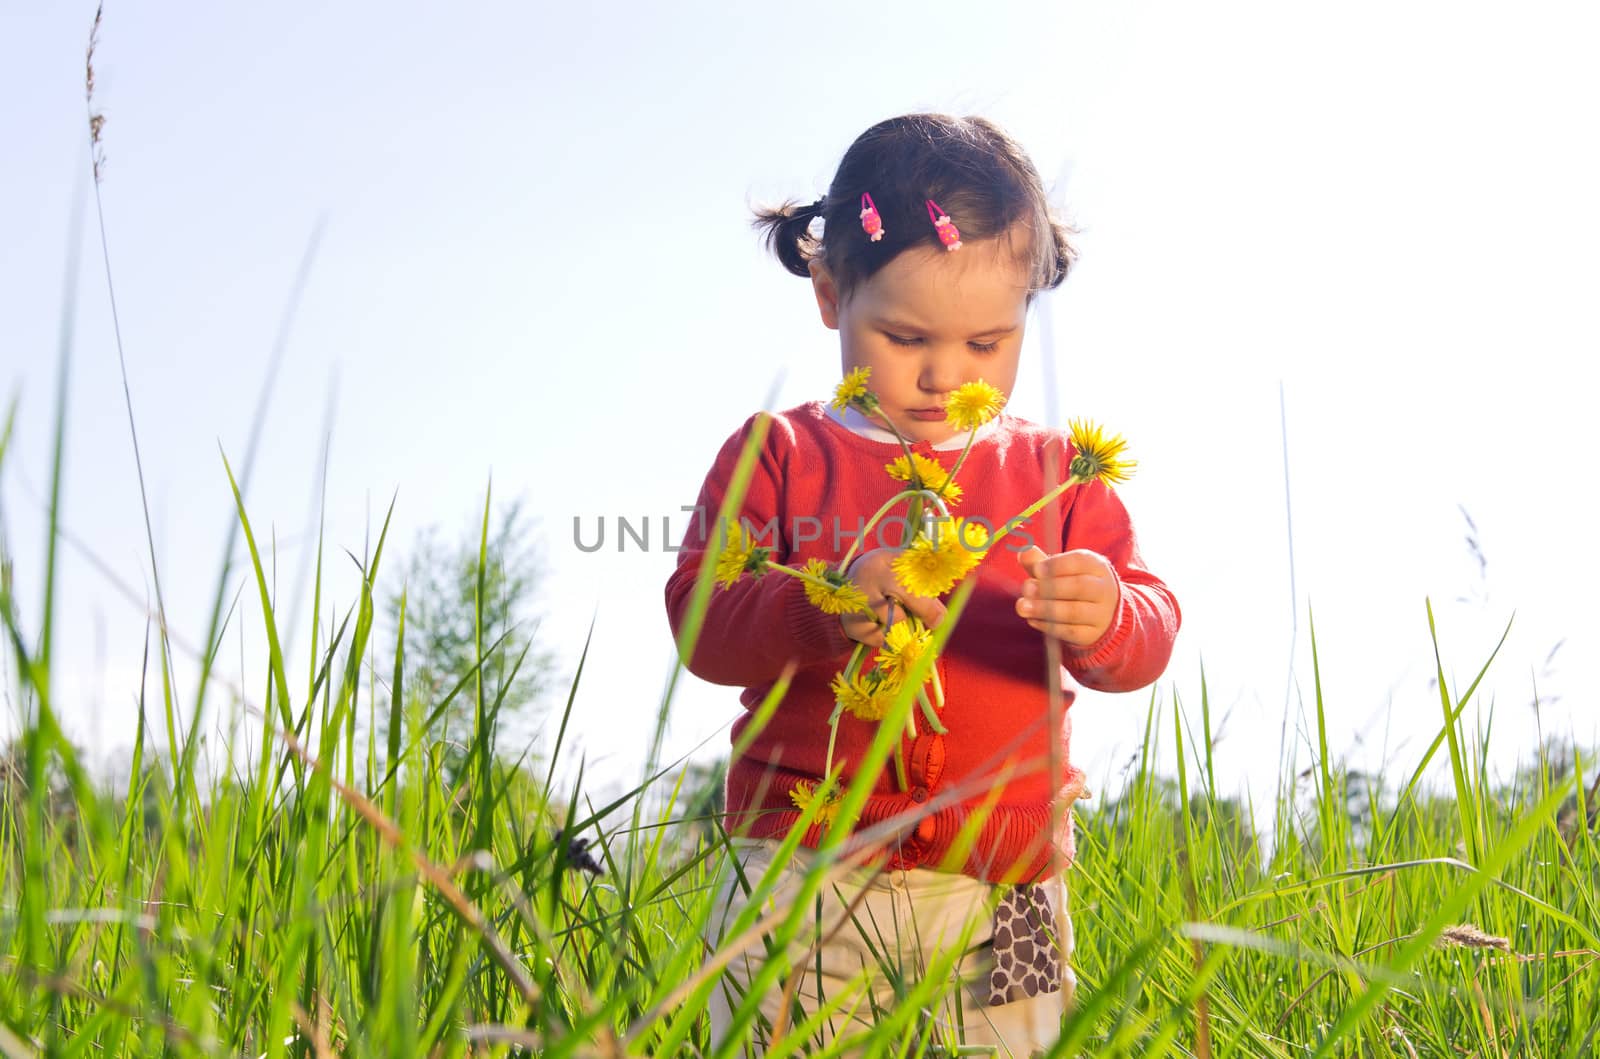 Little girl outdoors in high grass